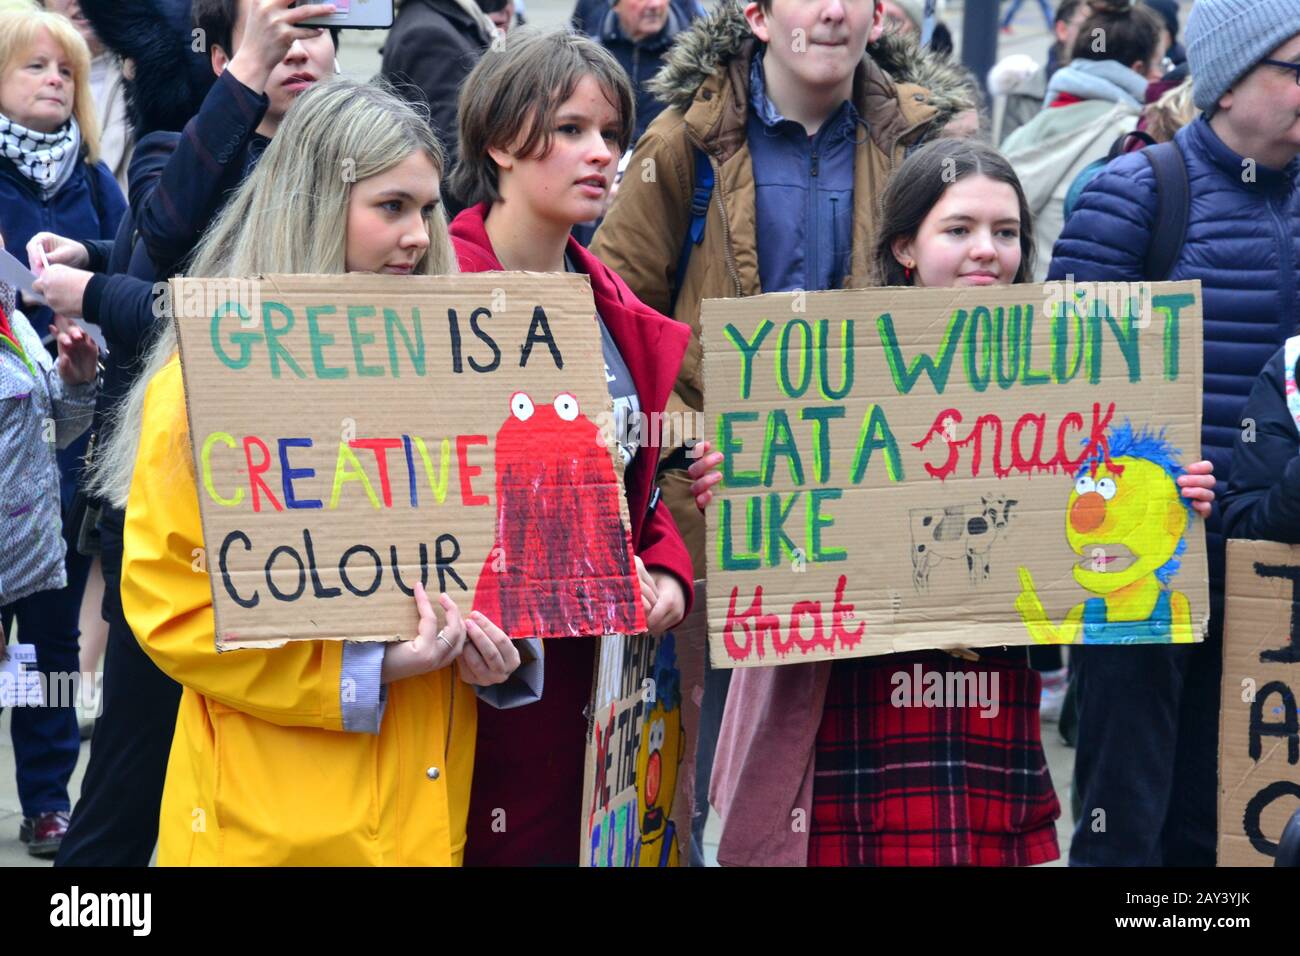 Junge Leute Lobby für Maßnahmen zur Verhinderung des Klimawandels beim Manchester Youth Strike 4 Klimaprotest am 14. Februar 2020 in Manchester, Großbritannien. Die Organisatoren sagen: "Sudent Climate Network (UKSCN) ist eine Gruppe von meist unter 18-Jährigen, die auf die Straße gehen, um gegen die fehlende Aktion der Regierung in der Klimakrise zu protestieren. Wir mobilisieren beispiellose Studentenzahlen, um eine starke Bewegung zu schaffen und eine Botschaft zu senden, dass wir es leid sind, ignoriert zu werden." Stockfoto